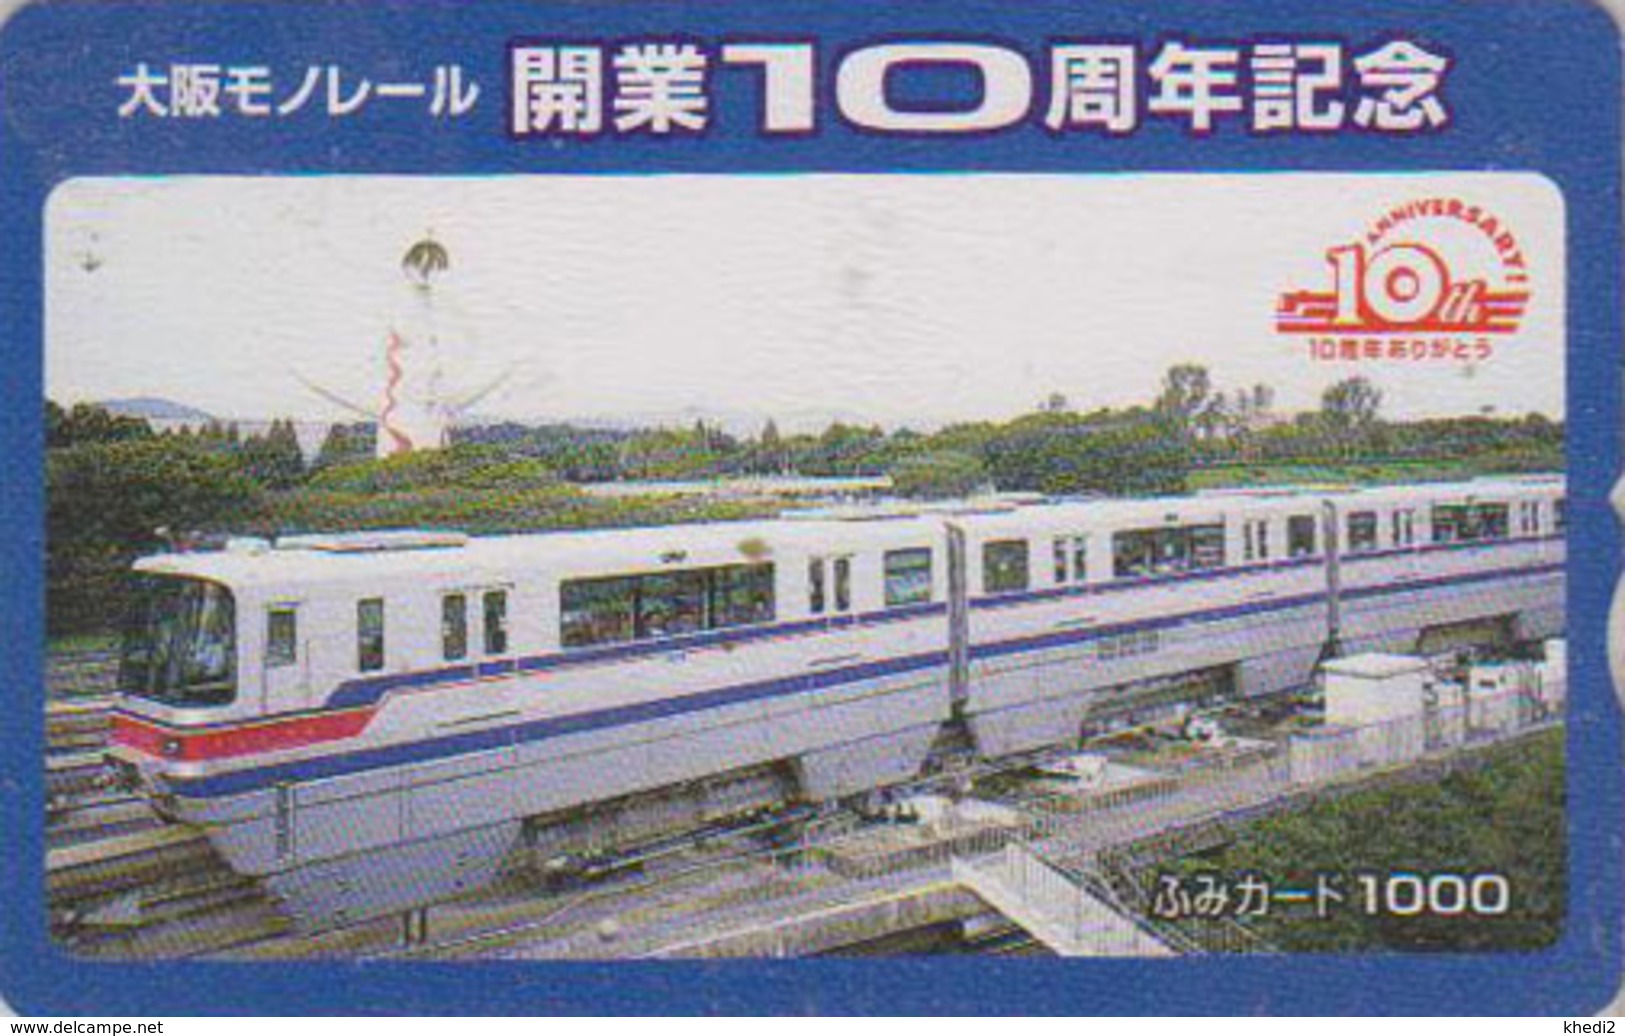 Carte Prépayée Japon - TRAIN MONORAIL - ZUG Eisenbahn - TREIN - Japan Prepaid Fumi Card - 3316 - Leuchttürme